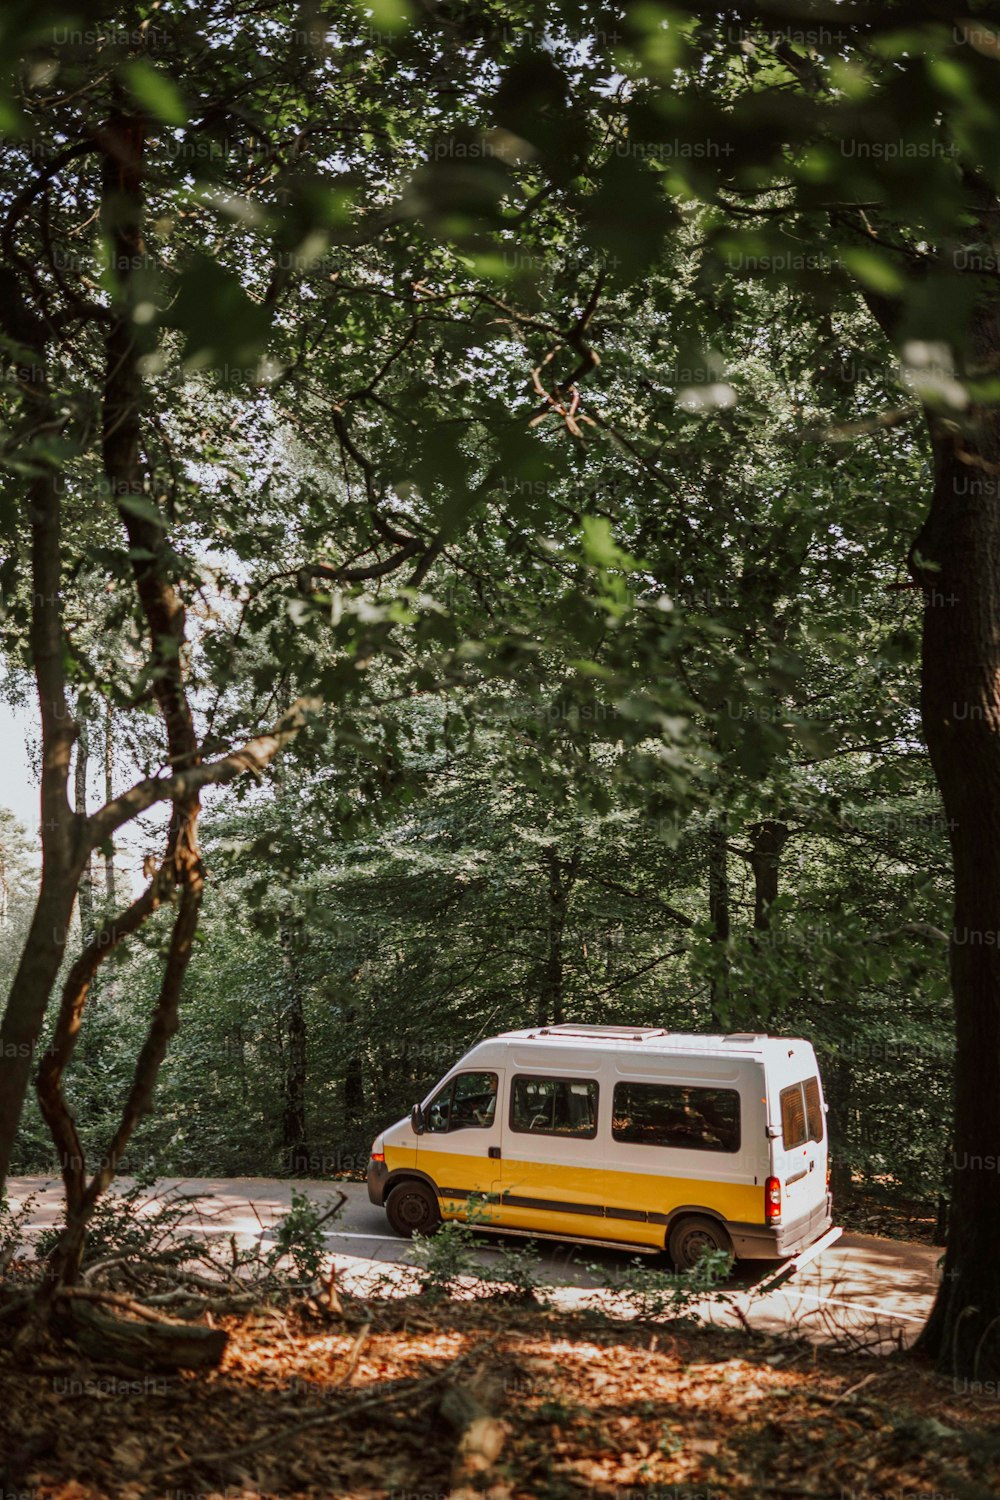 Una furgoneta amarilla y blanca estacionada en el bosque